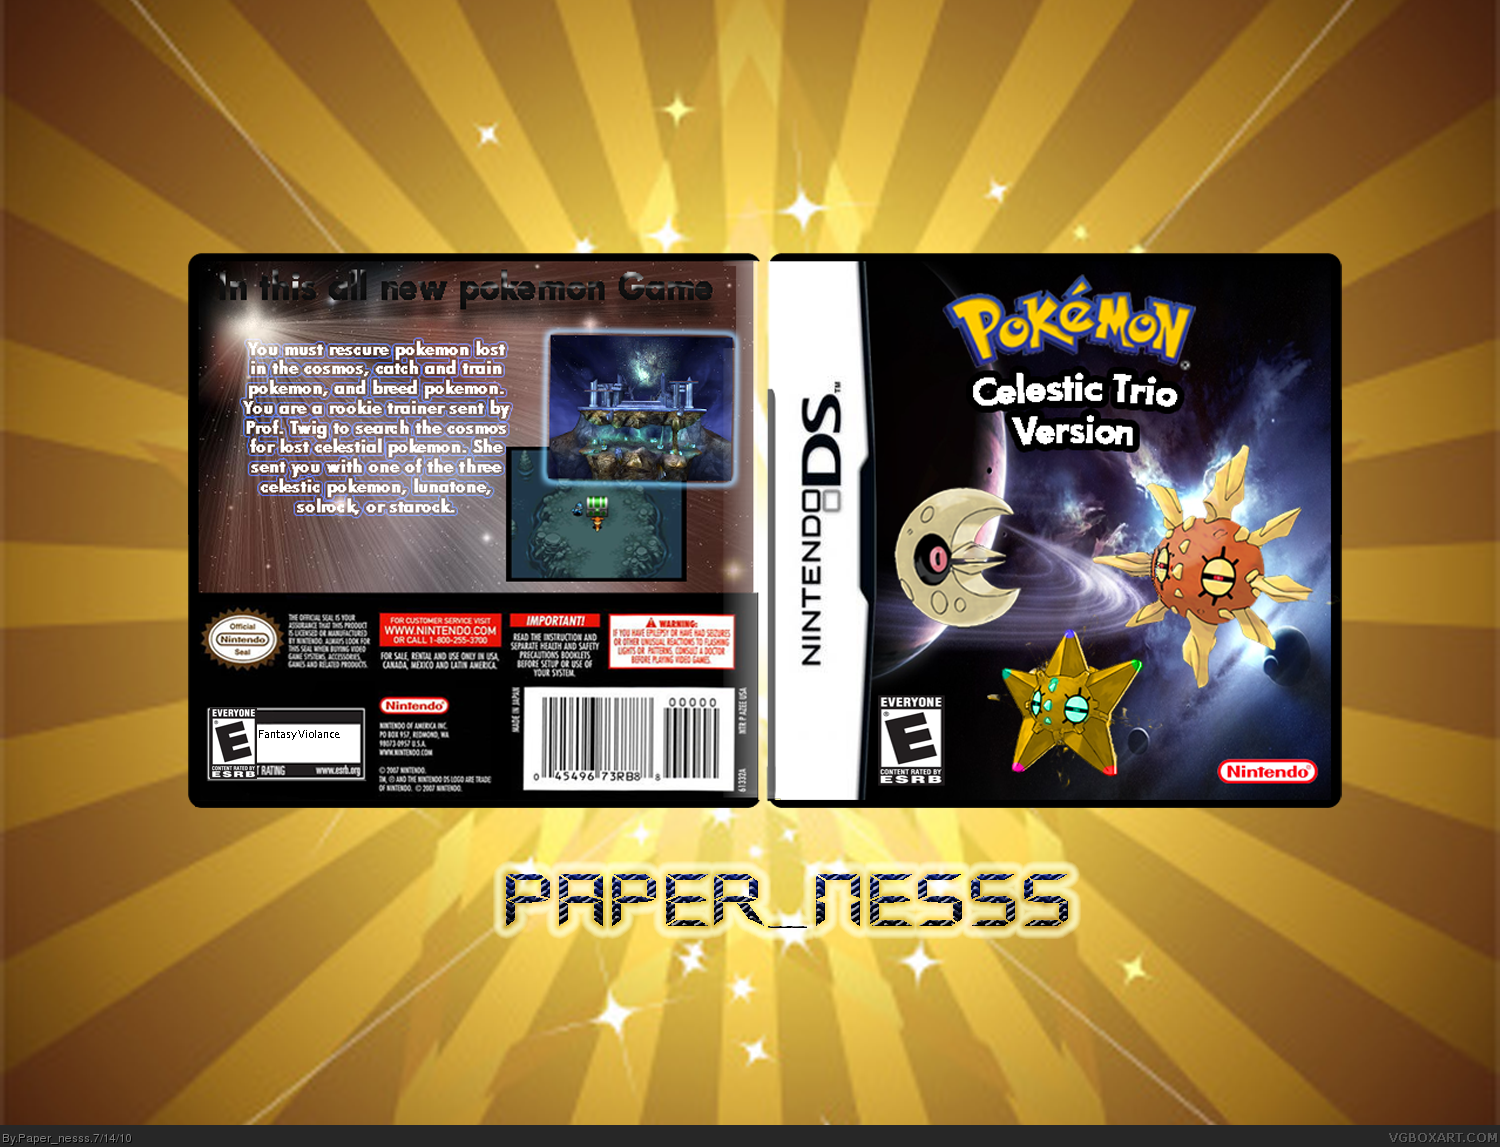 Pokemon Celestic Trio box cover